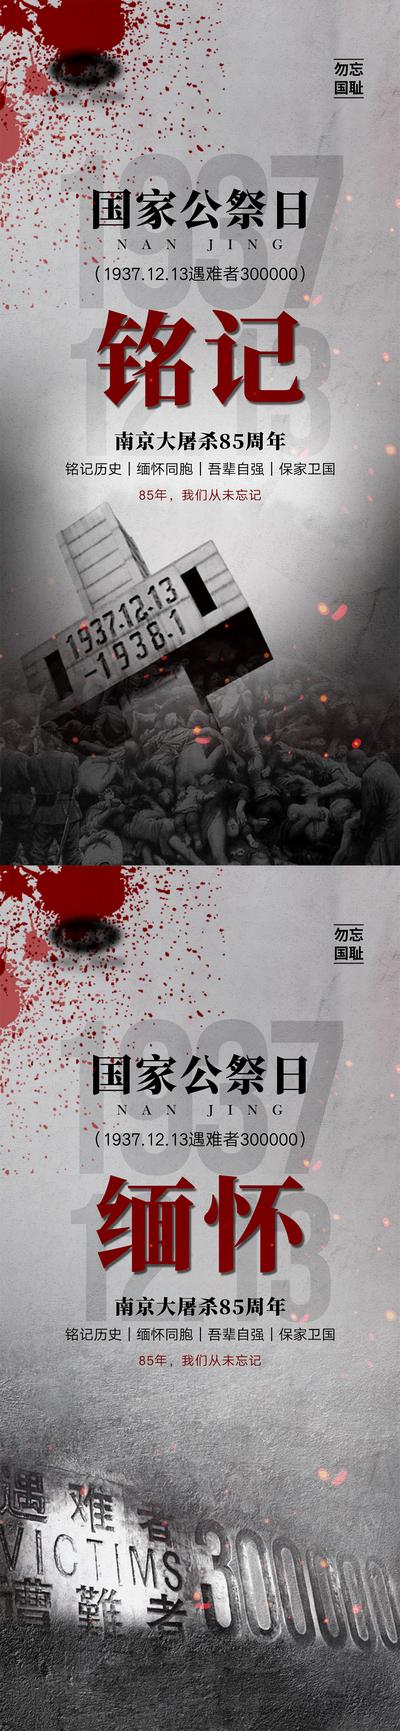 南门网 海报 公历节日 国家公祭日 南京大屠杀 纪念日 缅怀 纪念